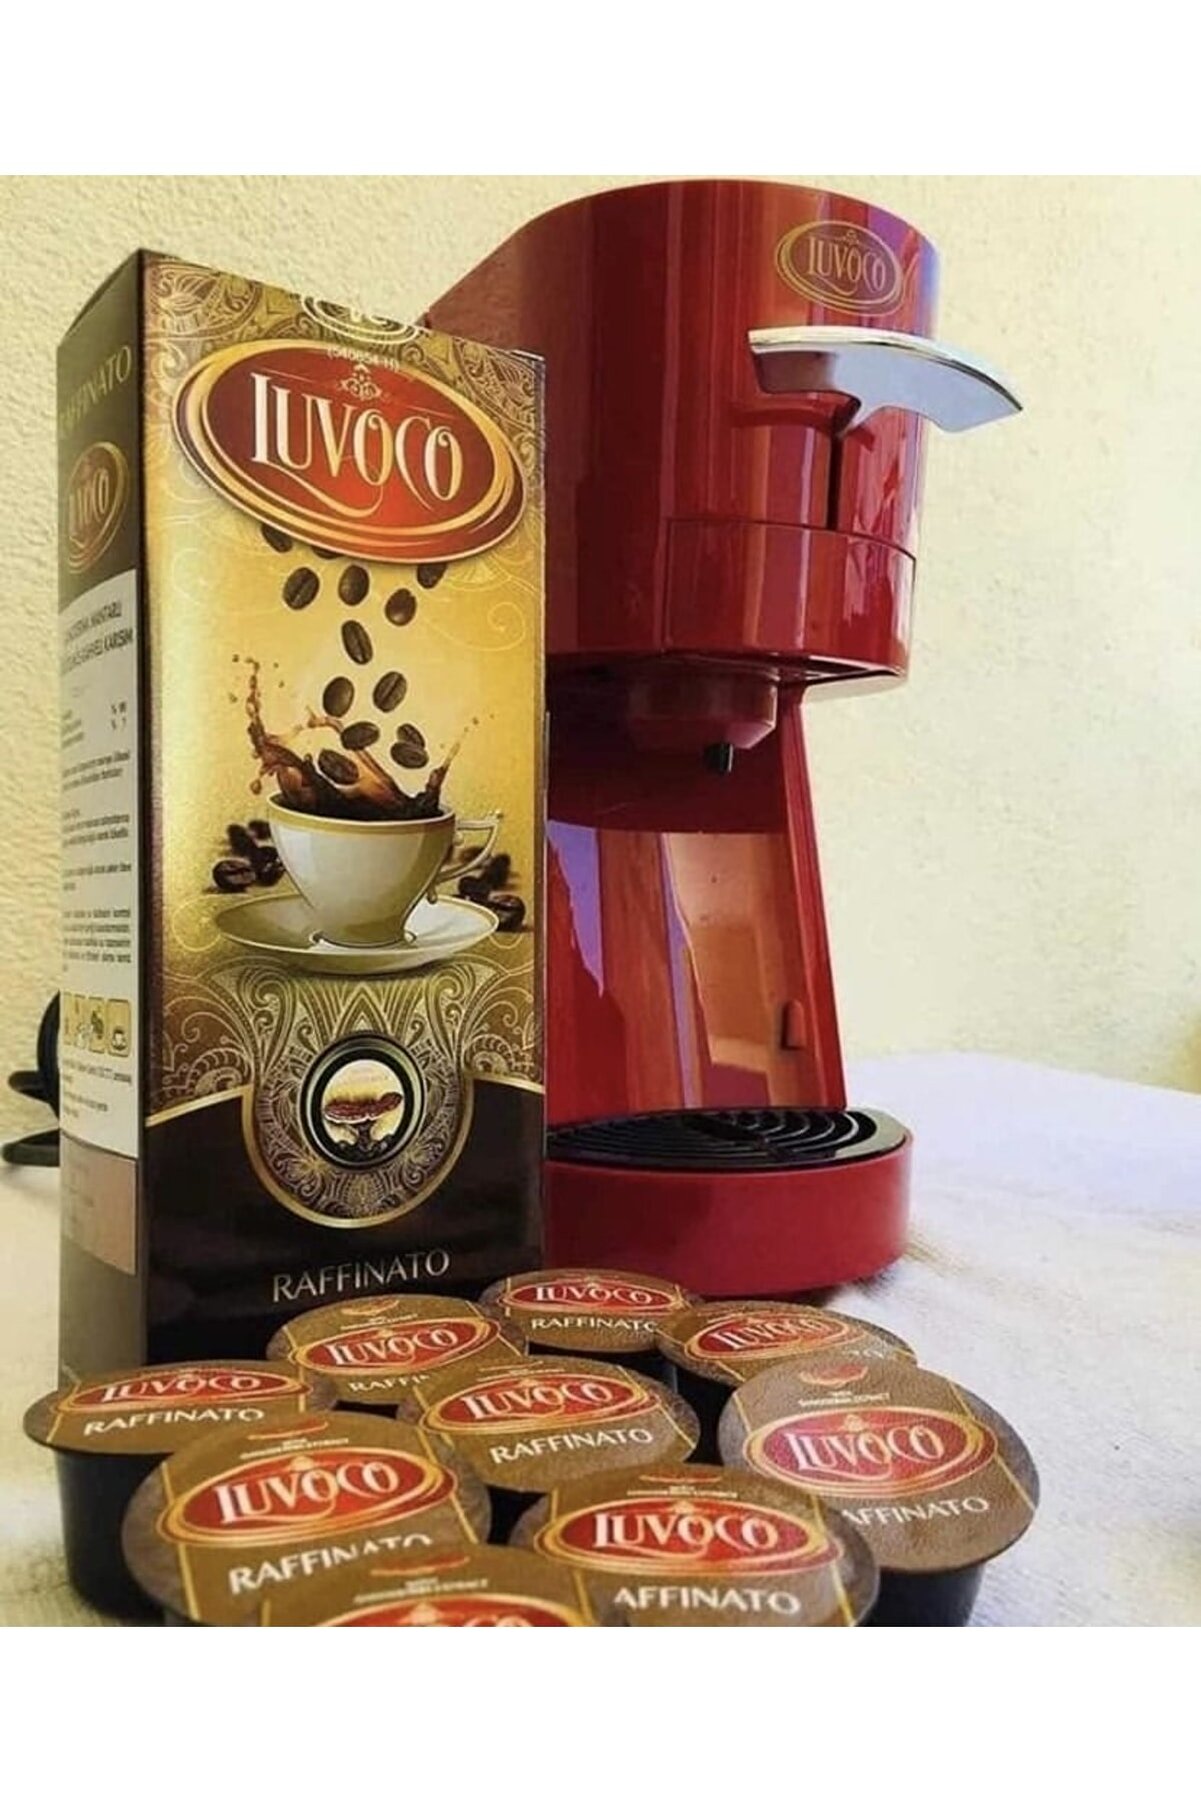 GanoExcel Yeni Luvoco Kapsül Kahve Makinesi +90 Kapsül Kahve Hediye